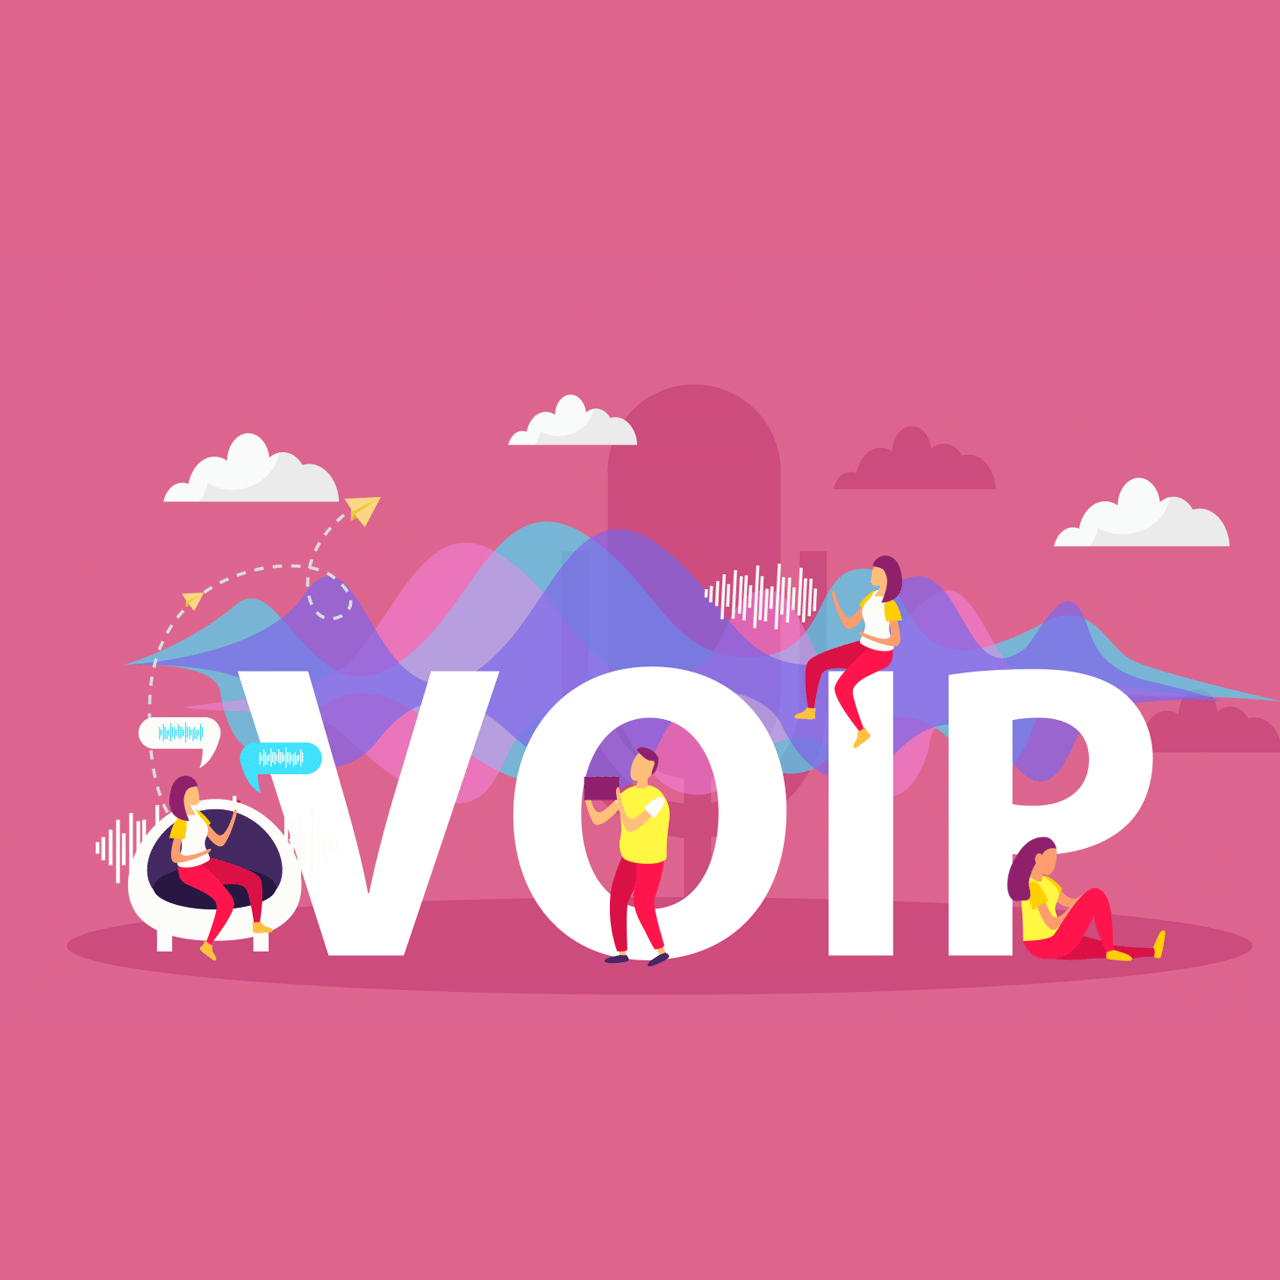 سرویس Voip چیست و چه تفاوتی با تلفن های ثابت دارد